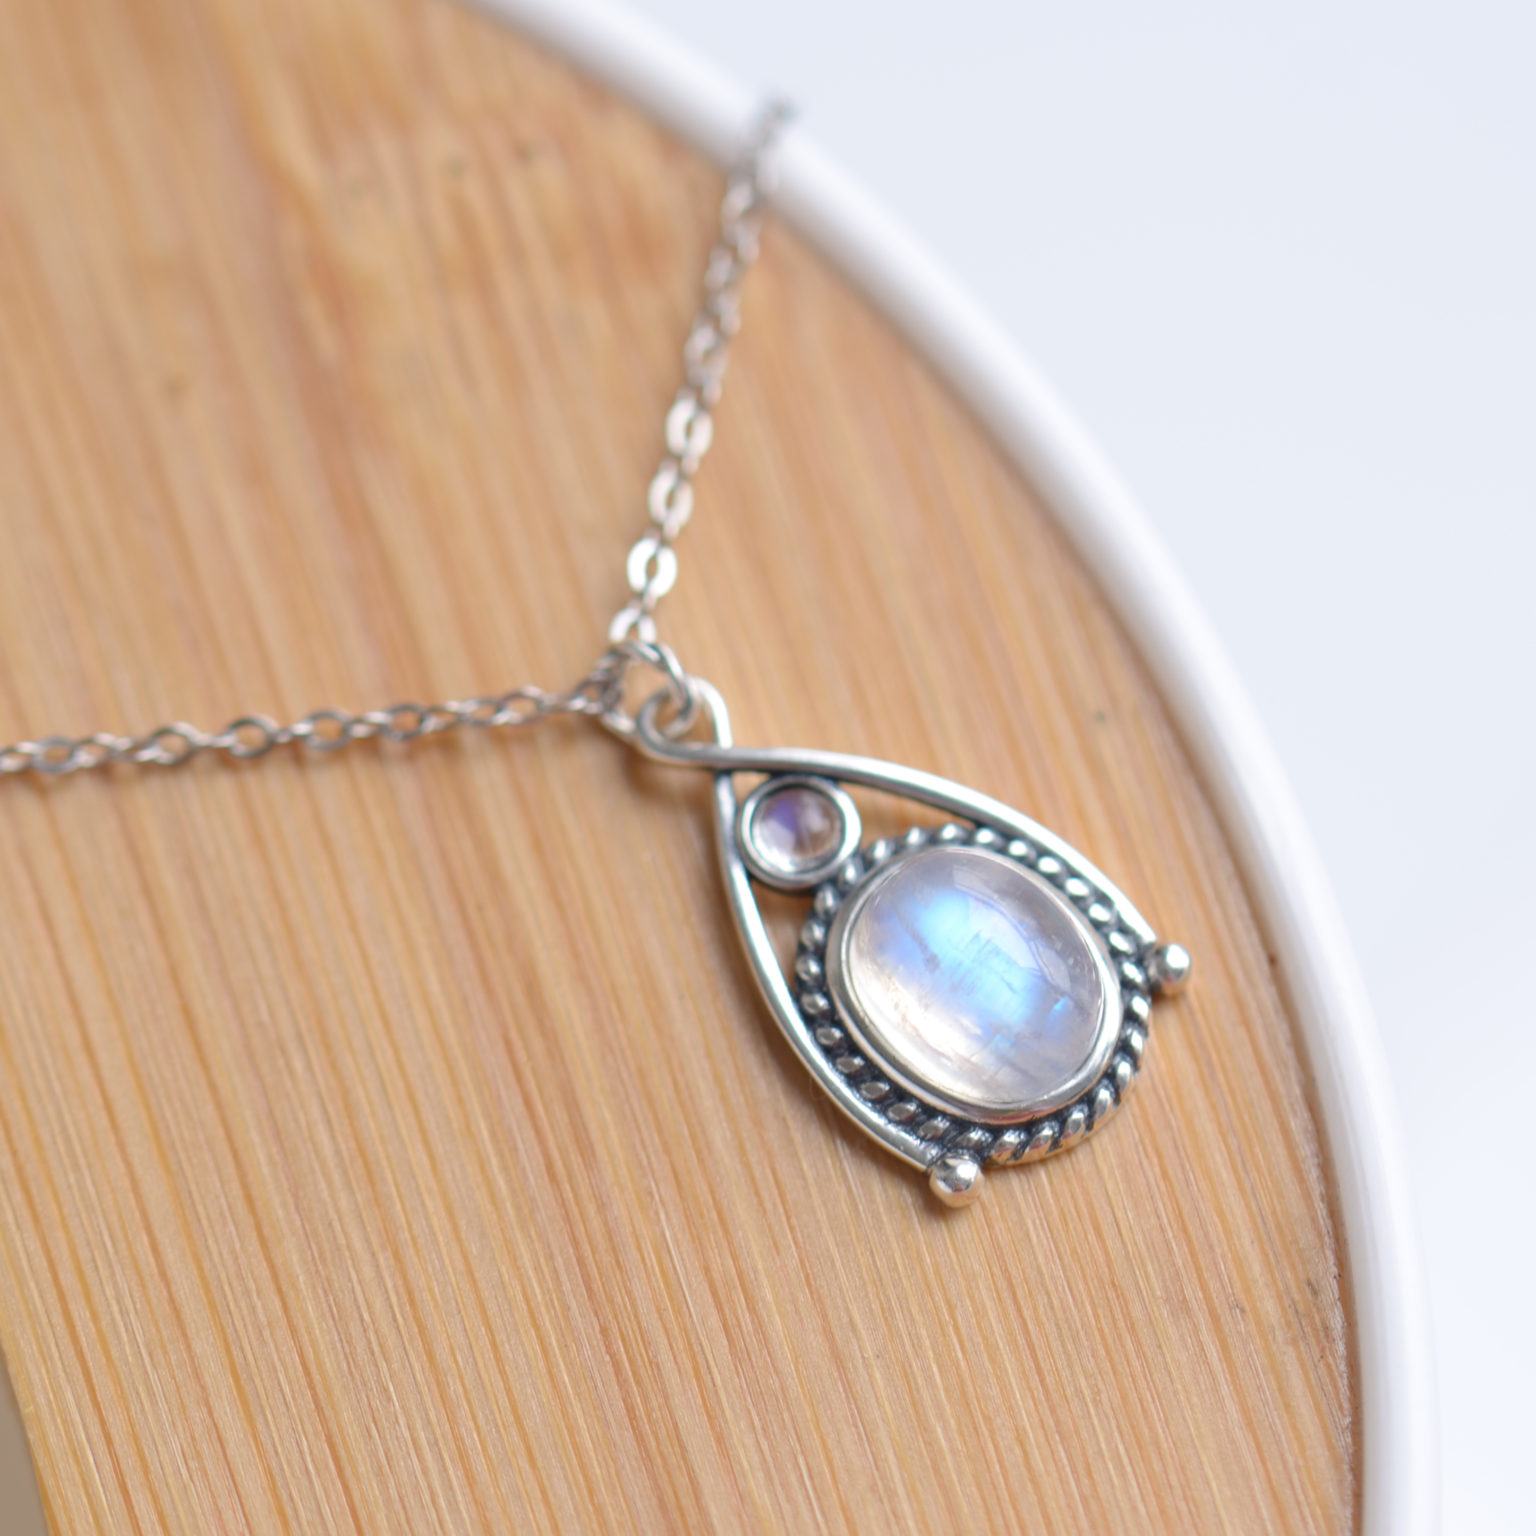 Moonstone “Energy” Pendant | Magick Jewelry